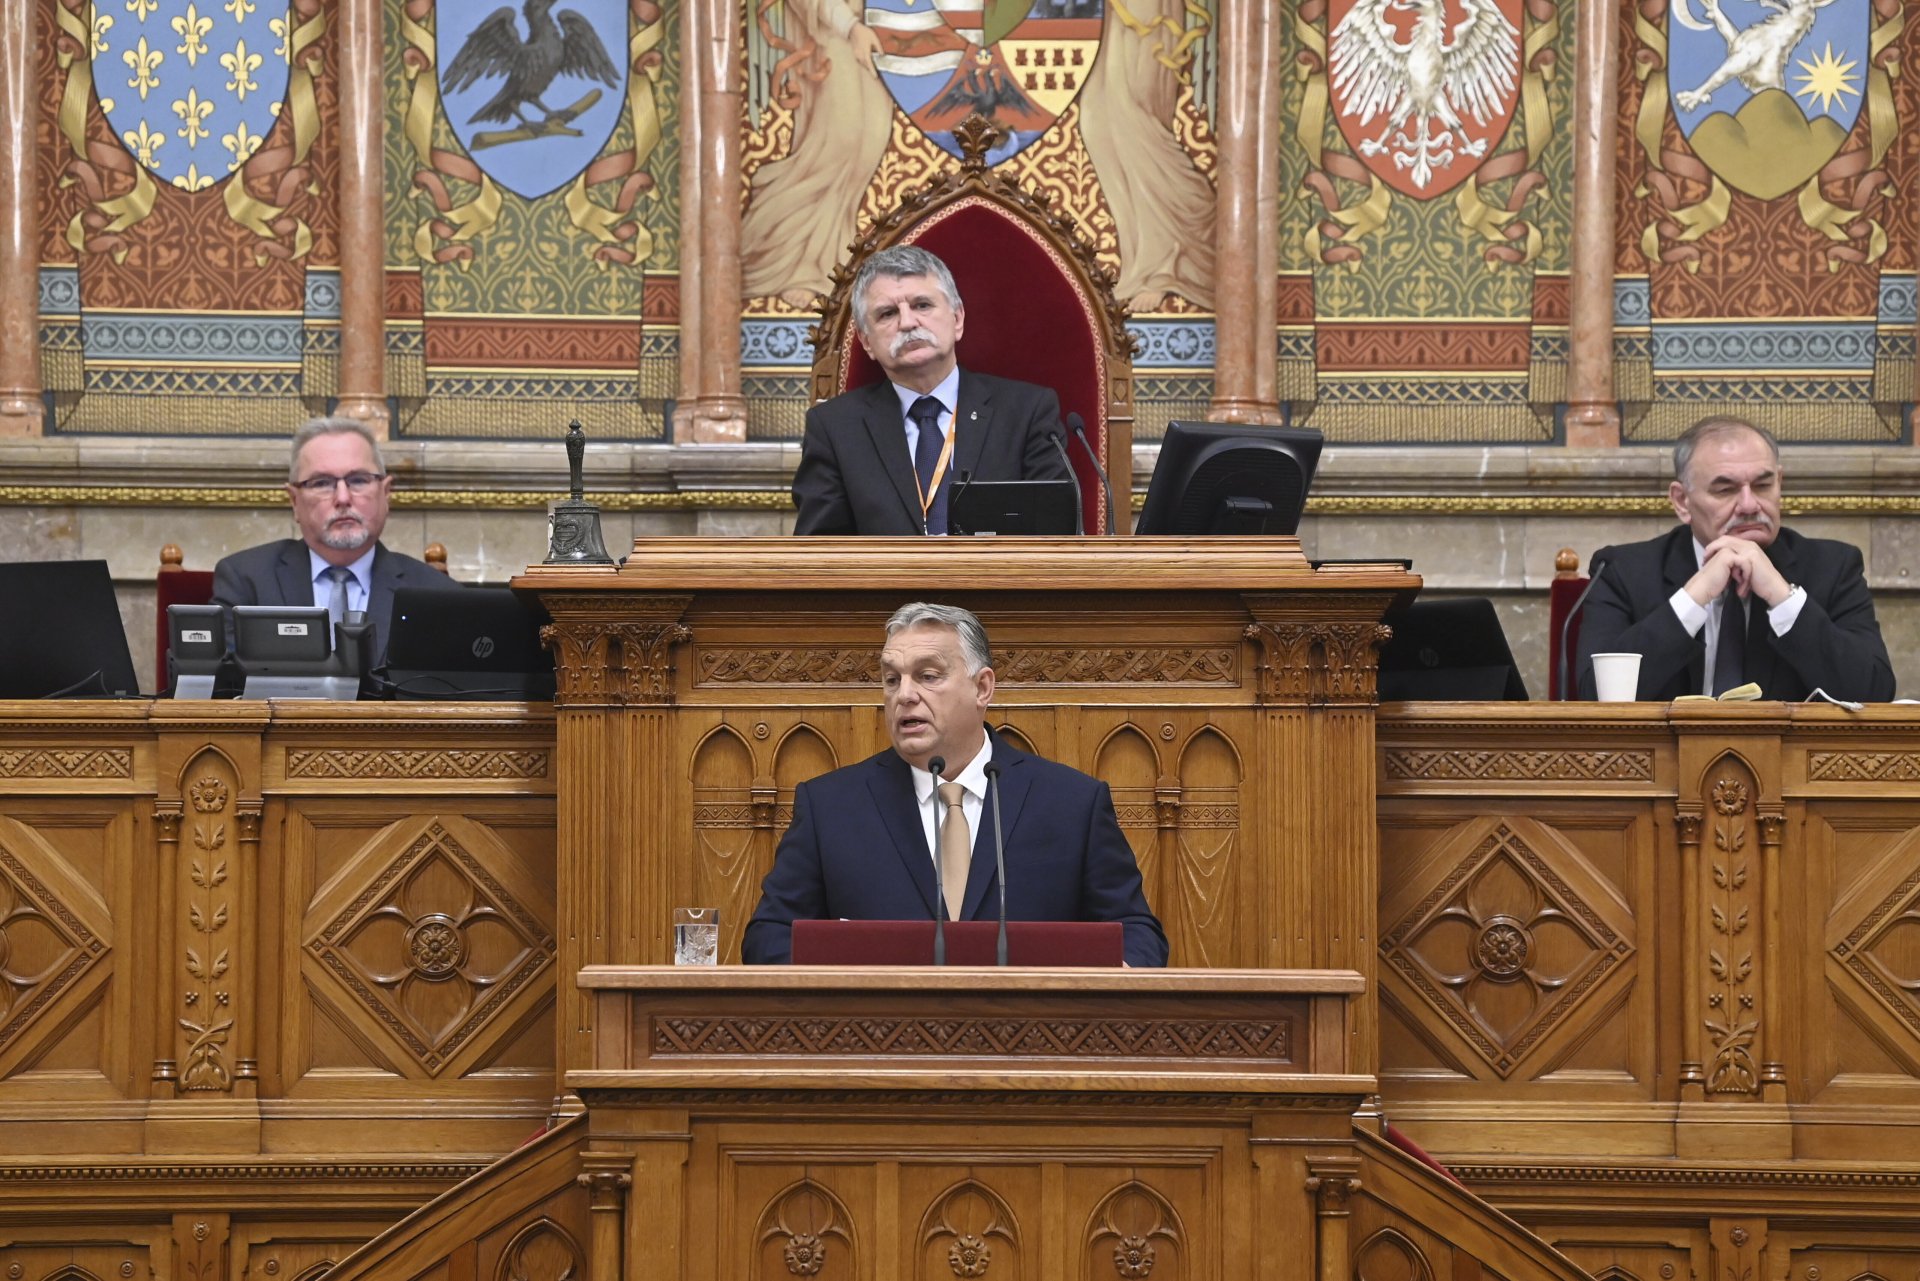 Унгарският премиер Виктор Орбан произнася своето обръщение в деня на откриването на есенната сесия на парламента в Будапеща, Унгария, понеделник, 26 септември 2022 г. Зад премиера е председателят на парламента Ласло Ковер